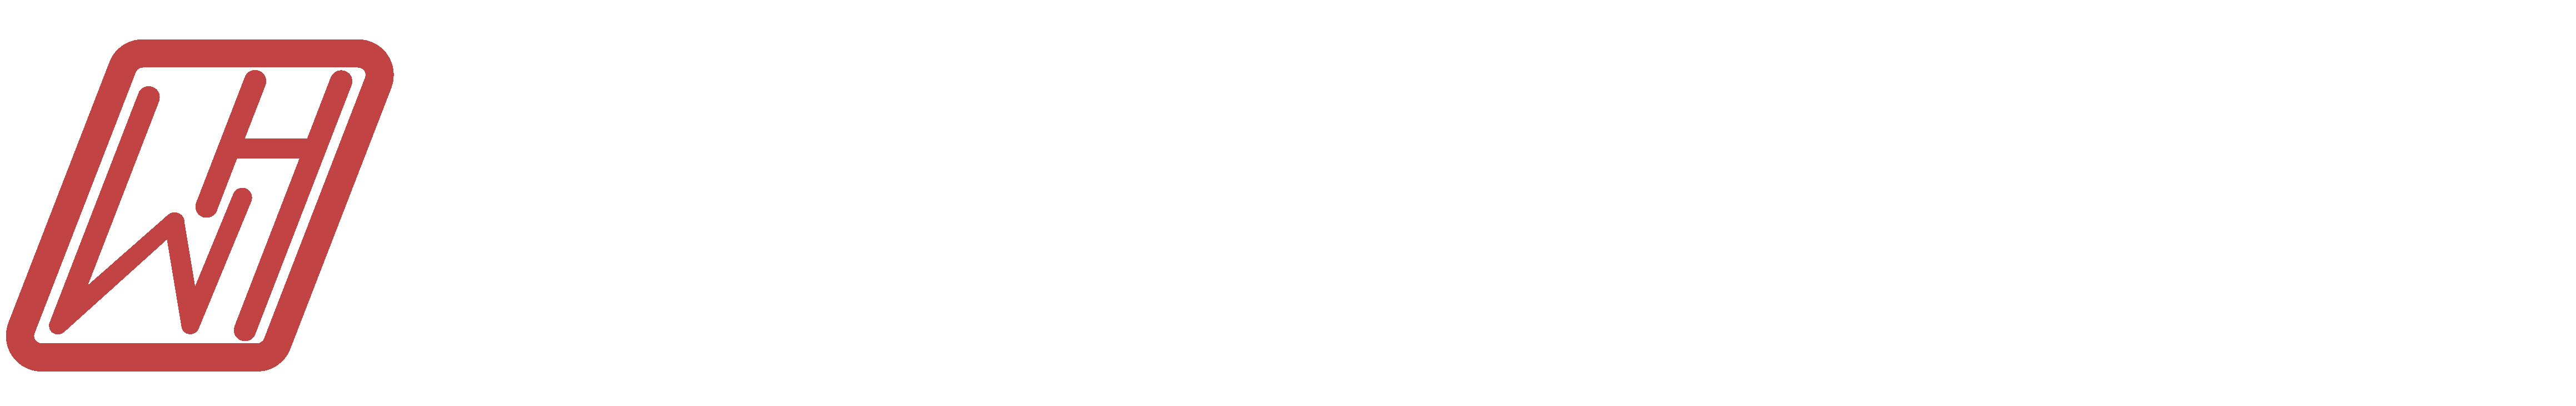 Wai Hung Hong